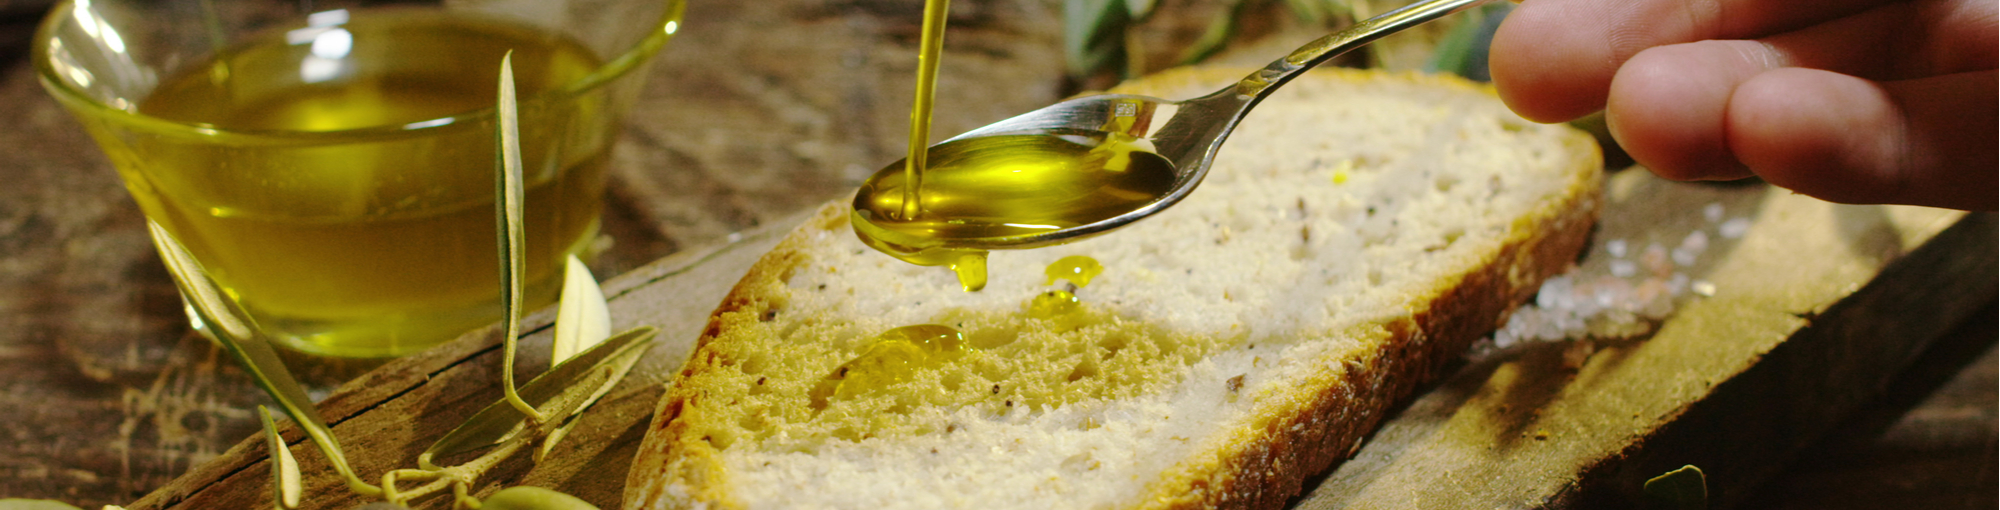 Jaén produce el aceite de oliva virgen extra de mayor calidad del planeta